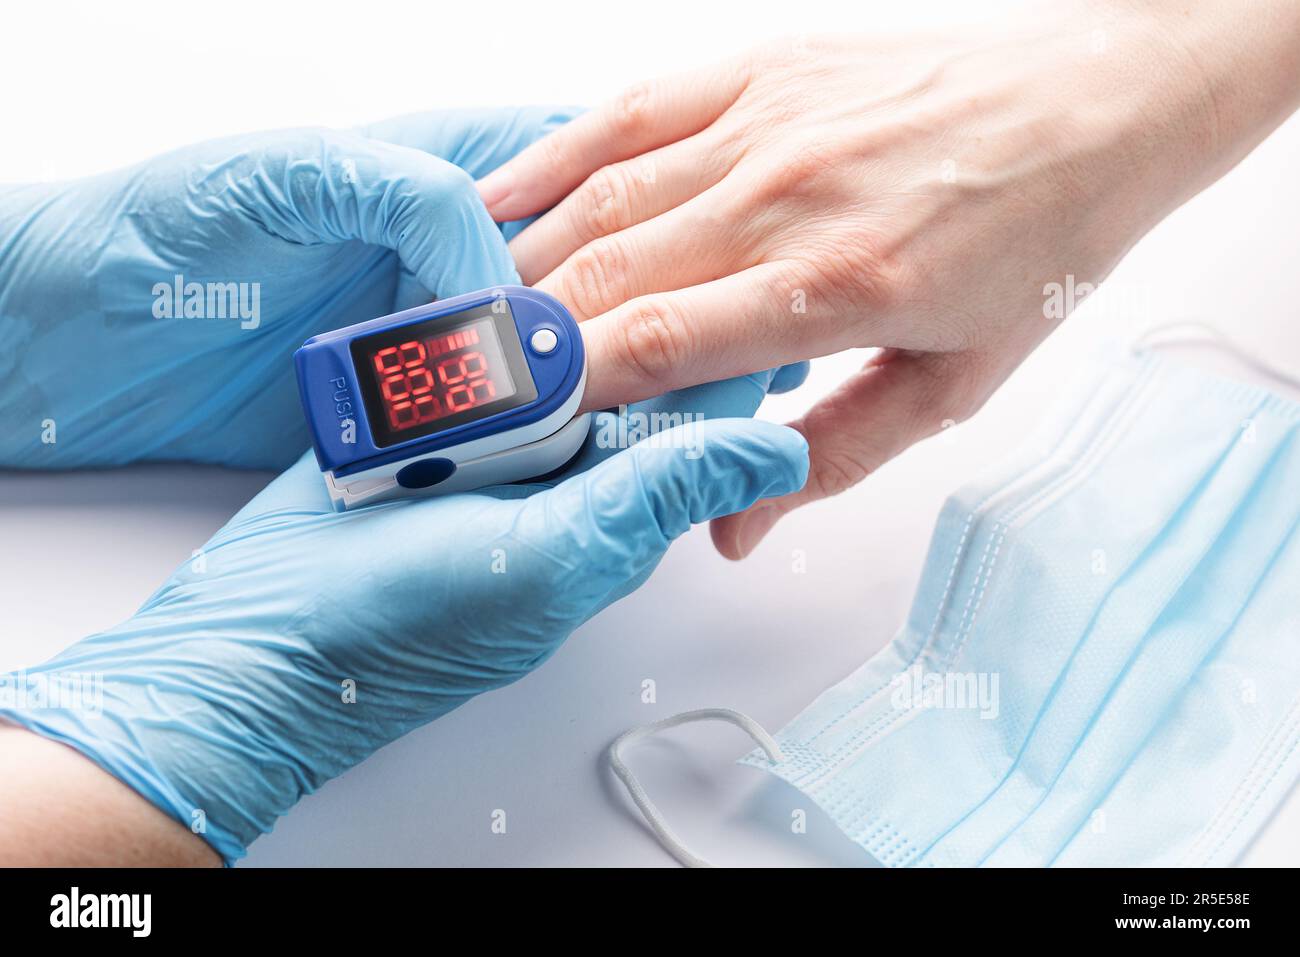 Pulsoxymeter zur Messung der Sauerstoffsättigung in Blut und Herzfrequenz.  Pulsoxymeter an der Hand des Patienten Stockfotografie - Alamy